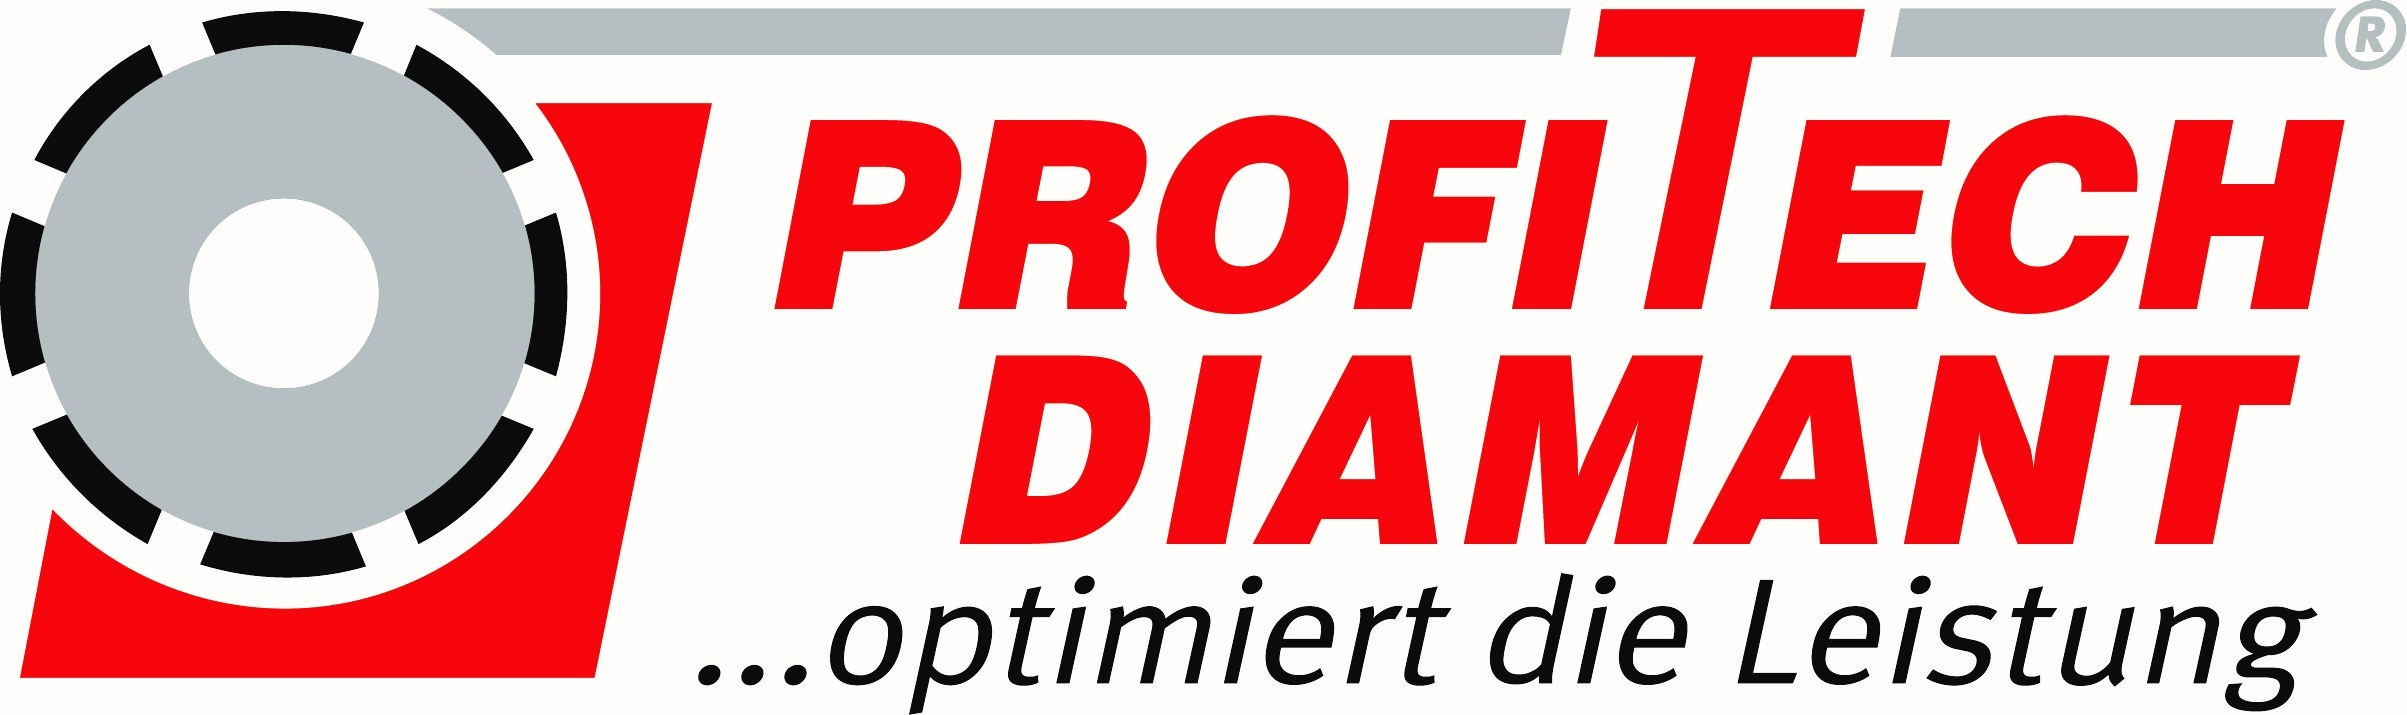 Profitech - Hersteller von Diamantwerkzeugen und Maschinen